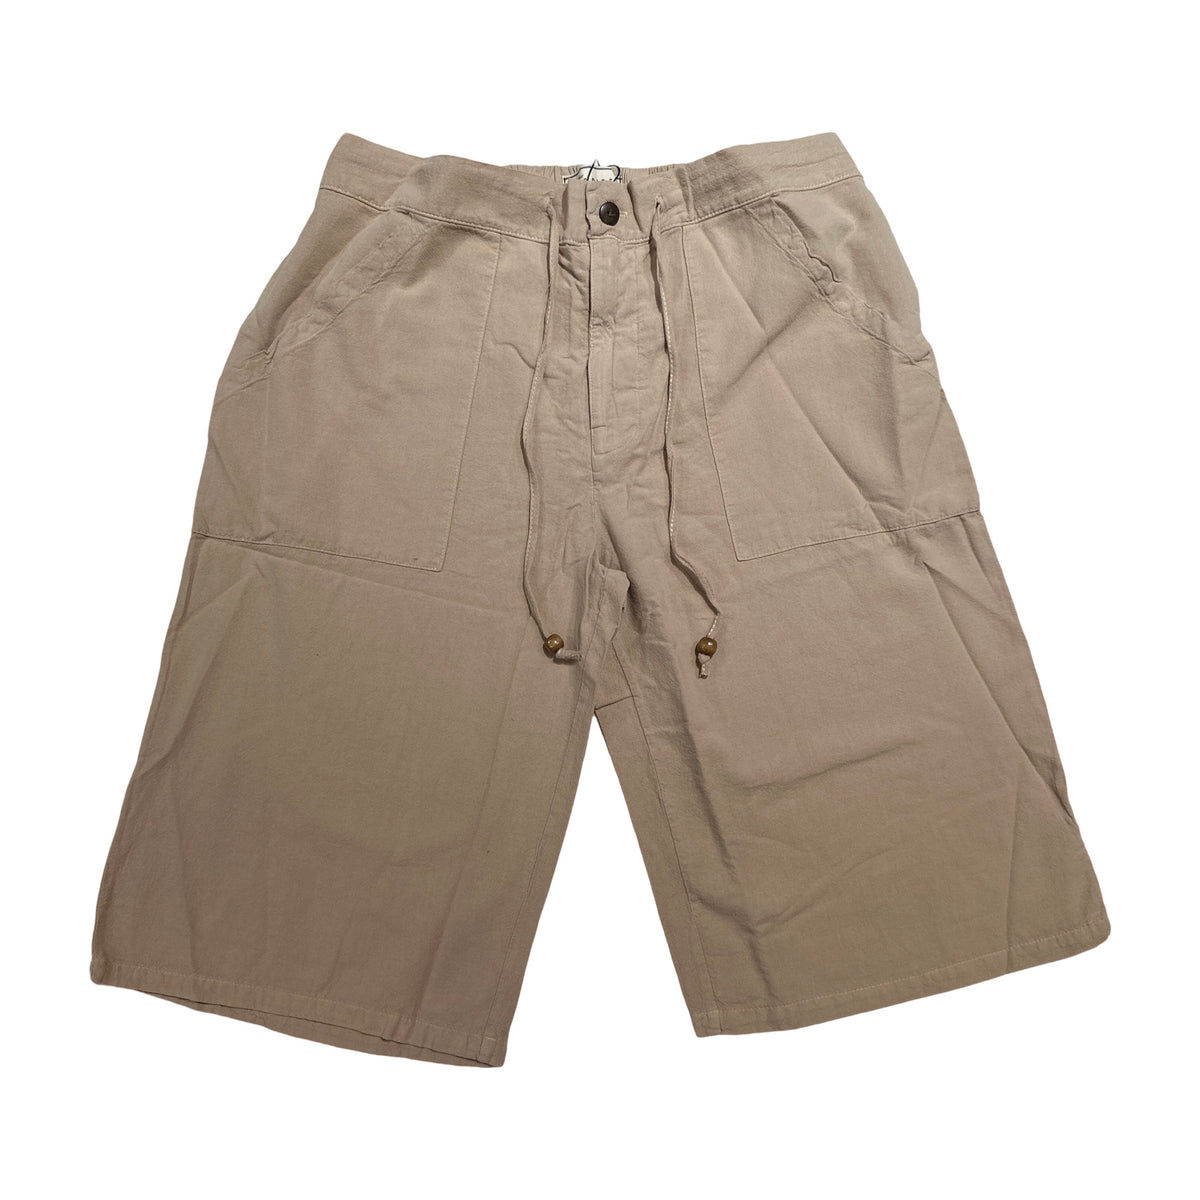 Seaspice Beige Double Pocket Peruvian Cotton Shorts - Dudes Boutique